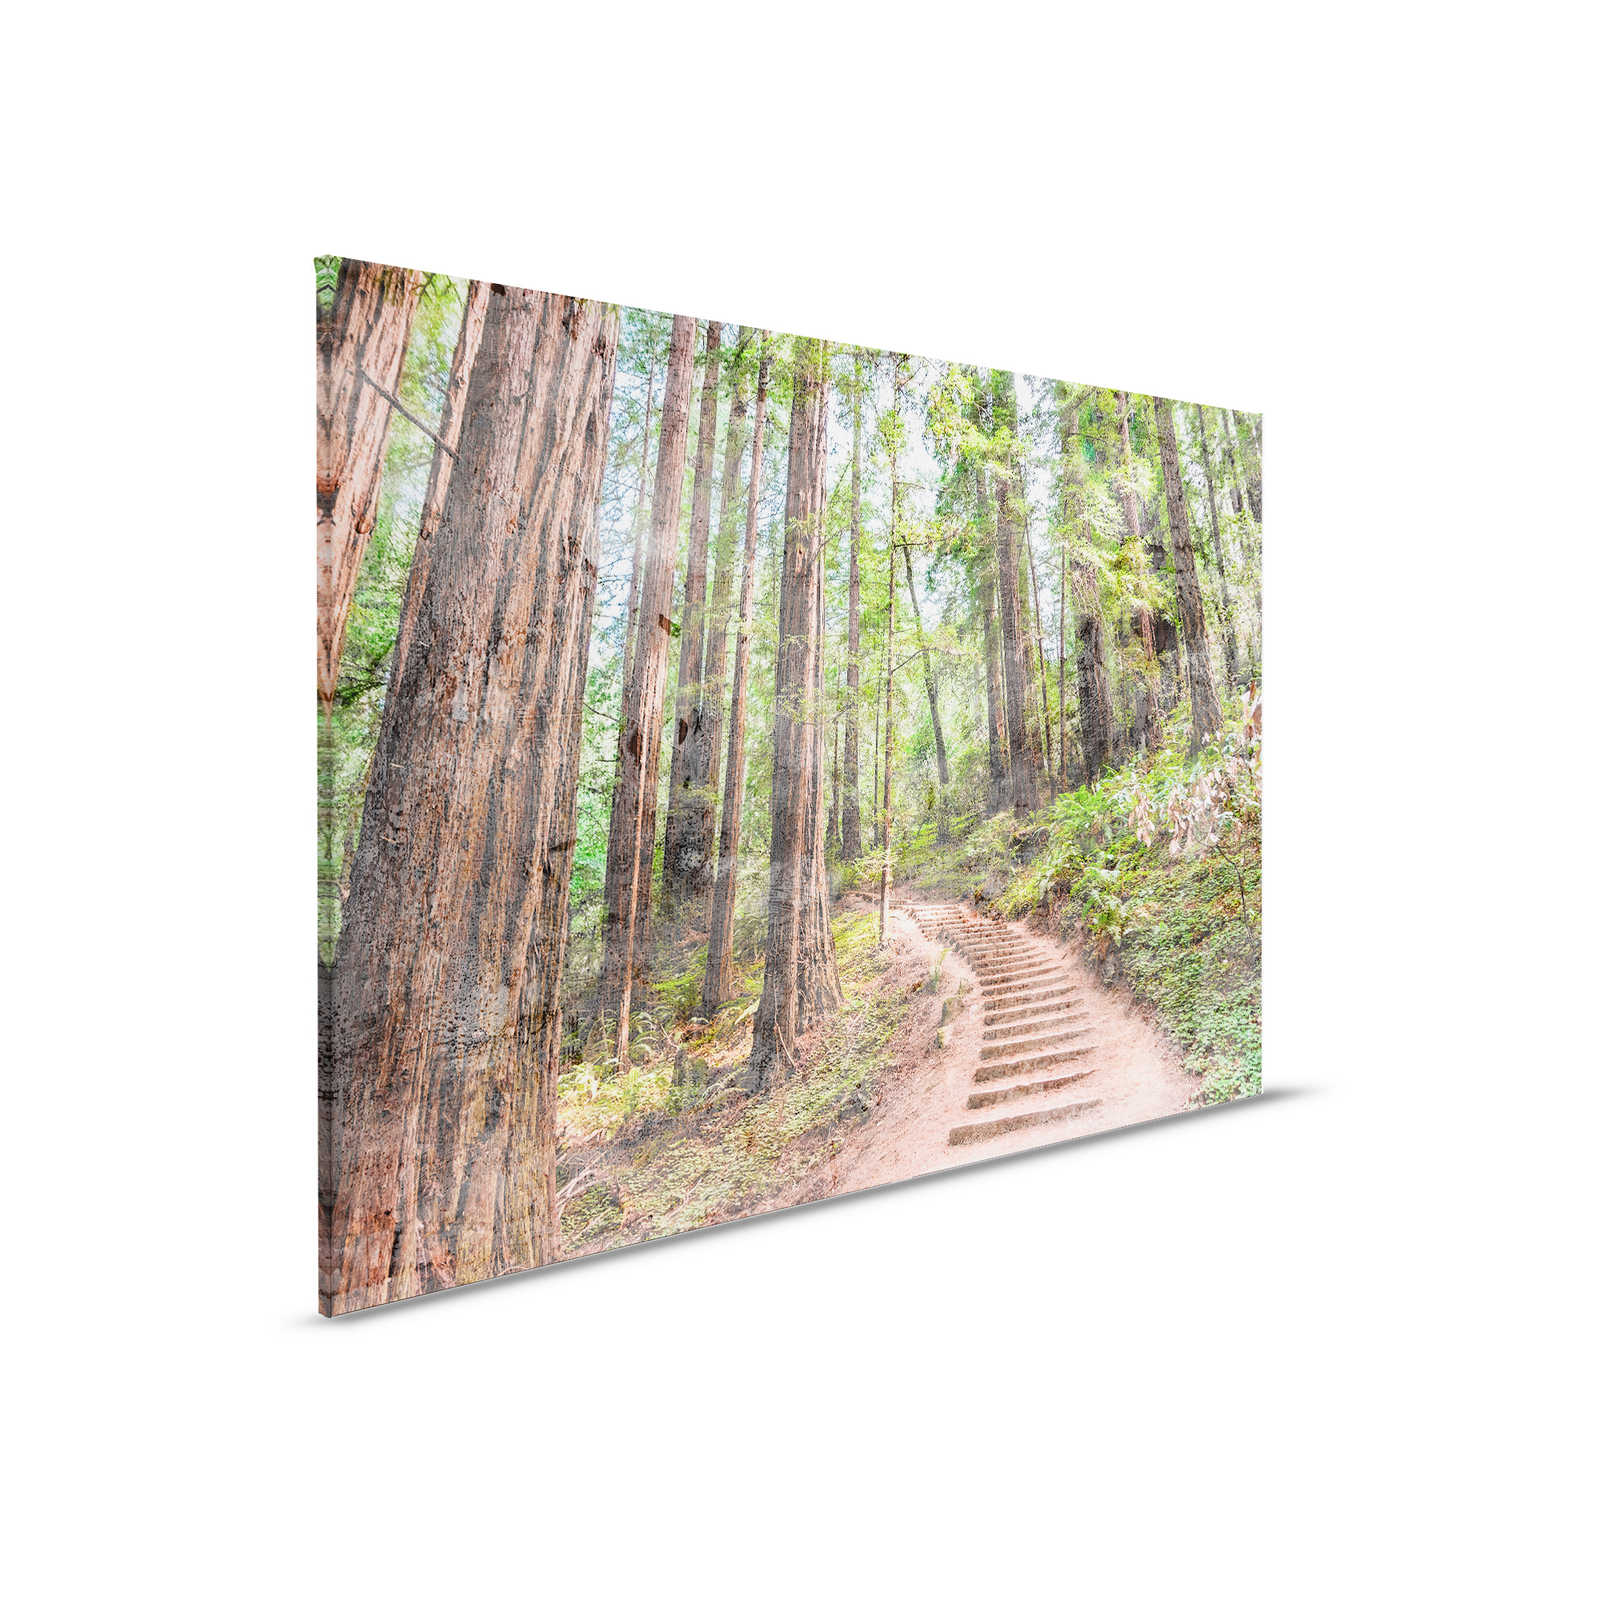 Toile avec escalier en bois à travers la forêt | marron, vert, bleu - 0,90 m x 0,60 m
